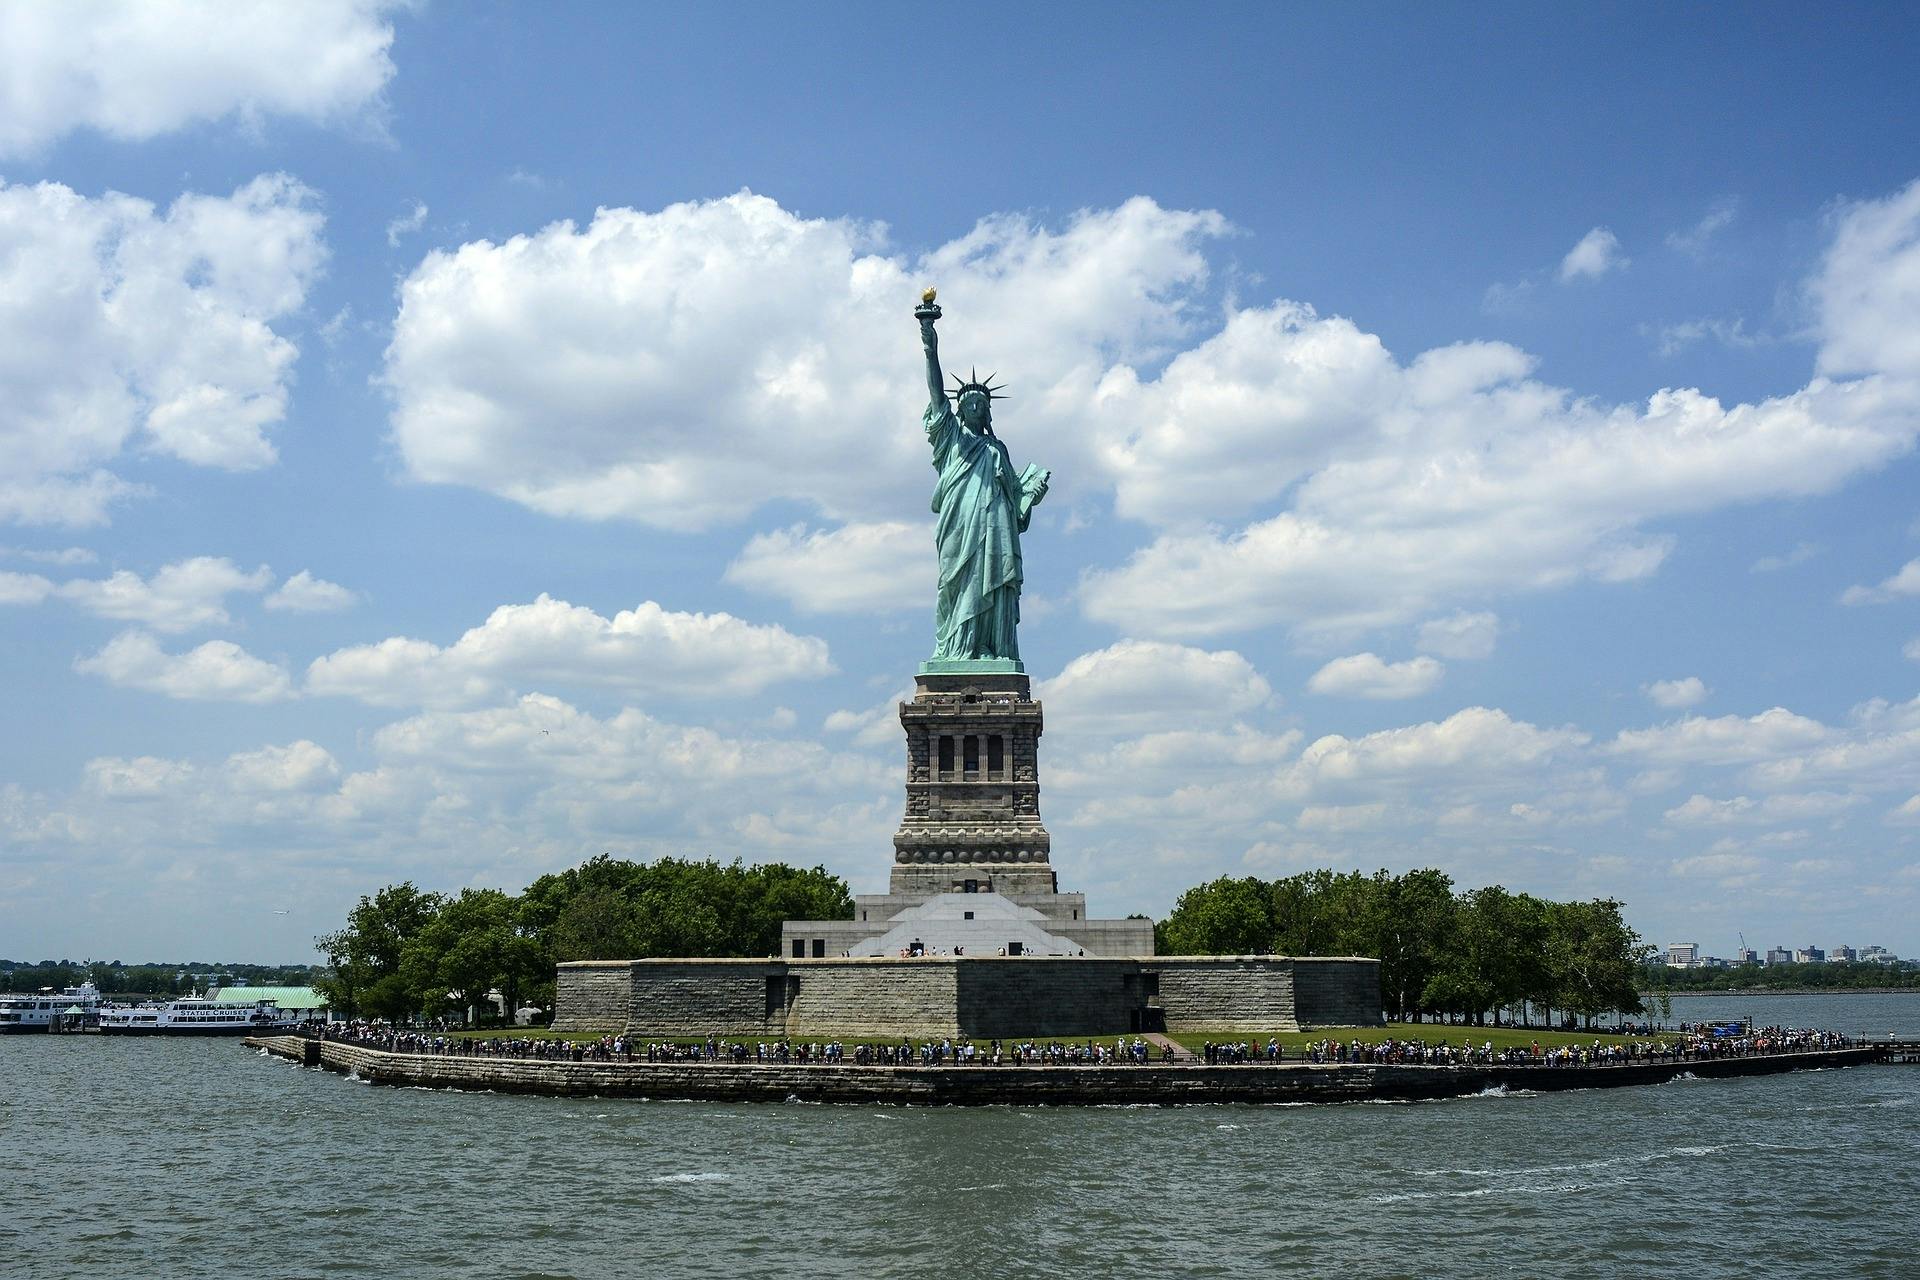 Boleto de ferry exprés a la Estatua de la Libertad y visita guiada opcional